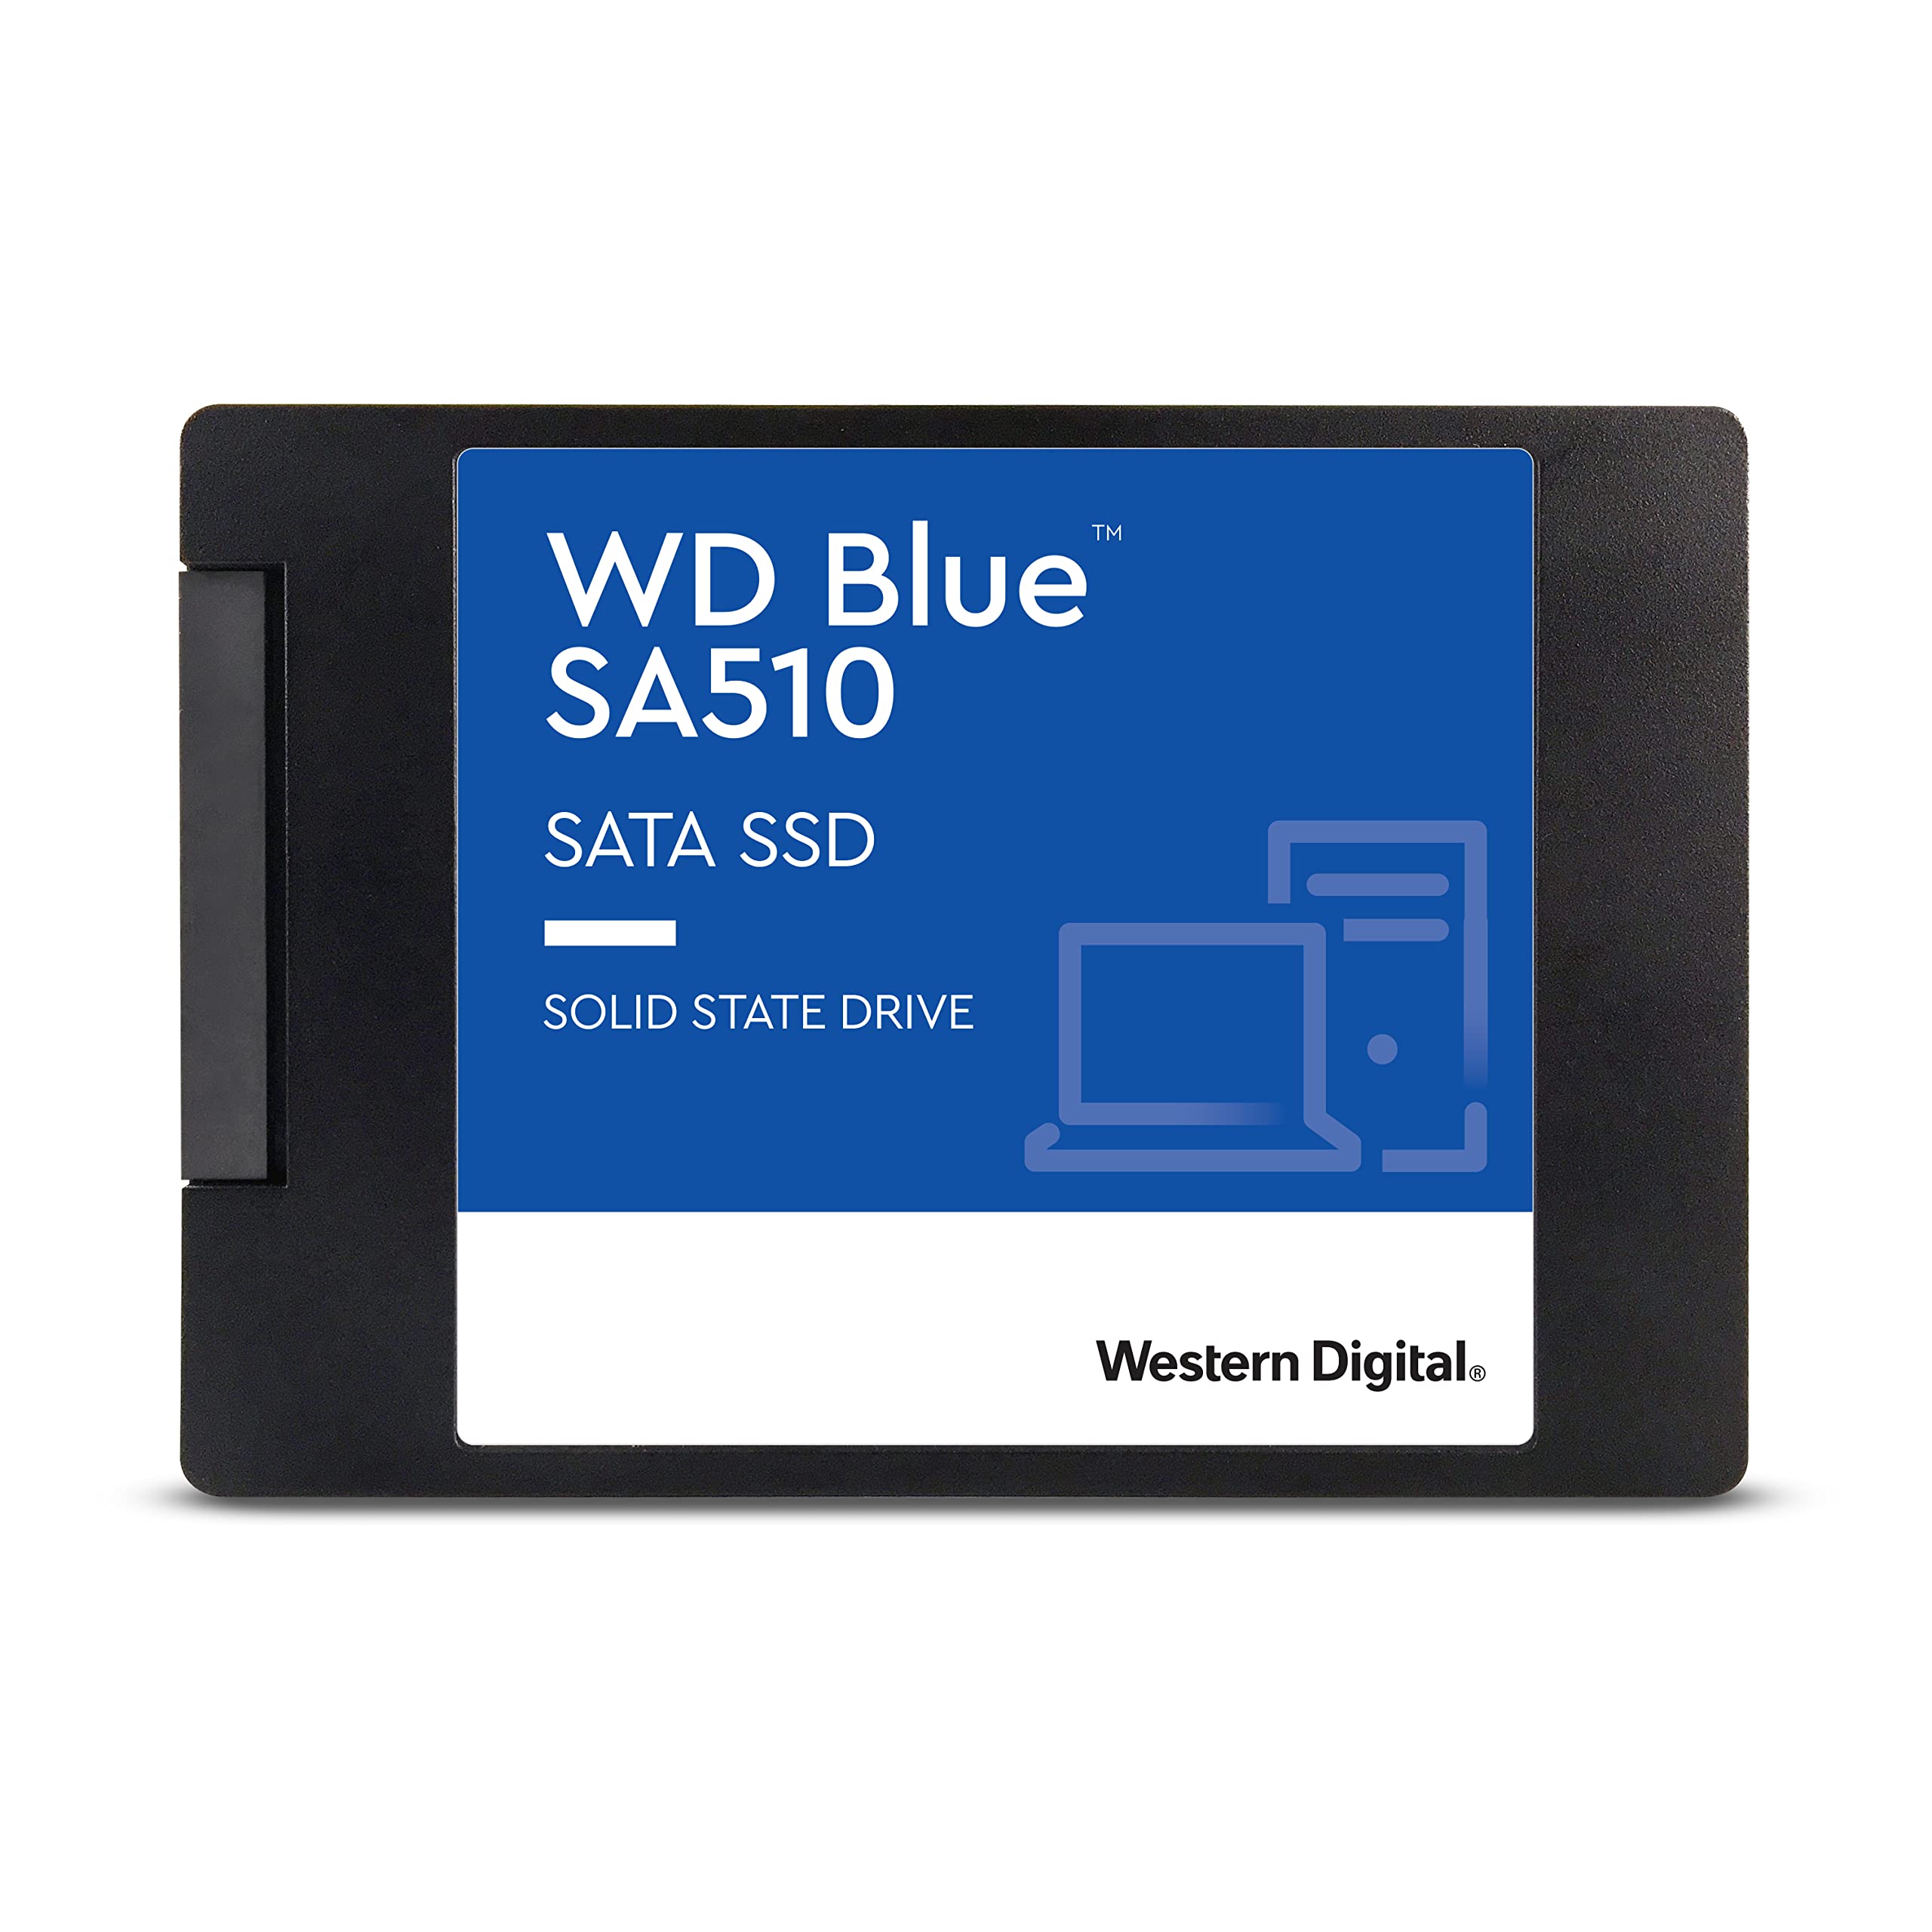 4TB WD BLUE SA510 SATA SSD